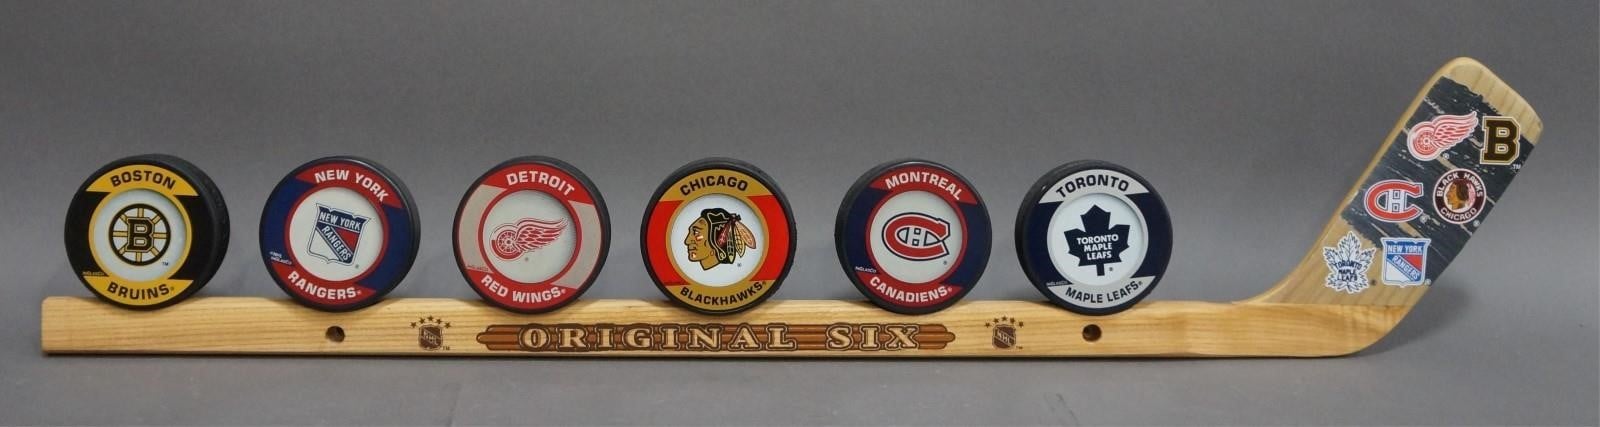 Boston Bruins Original Six Puck